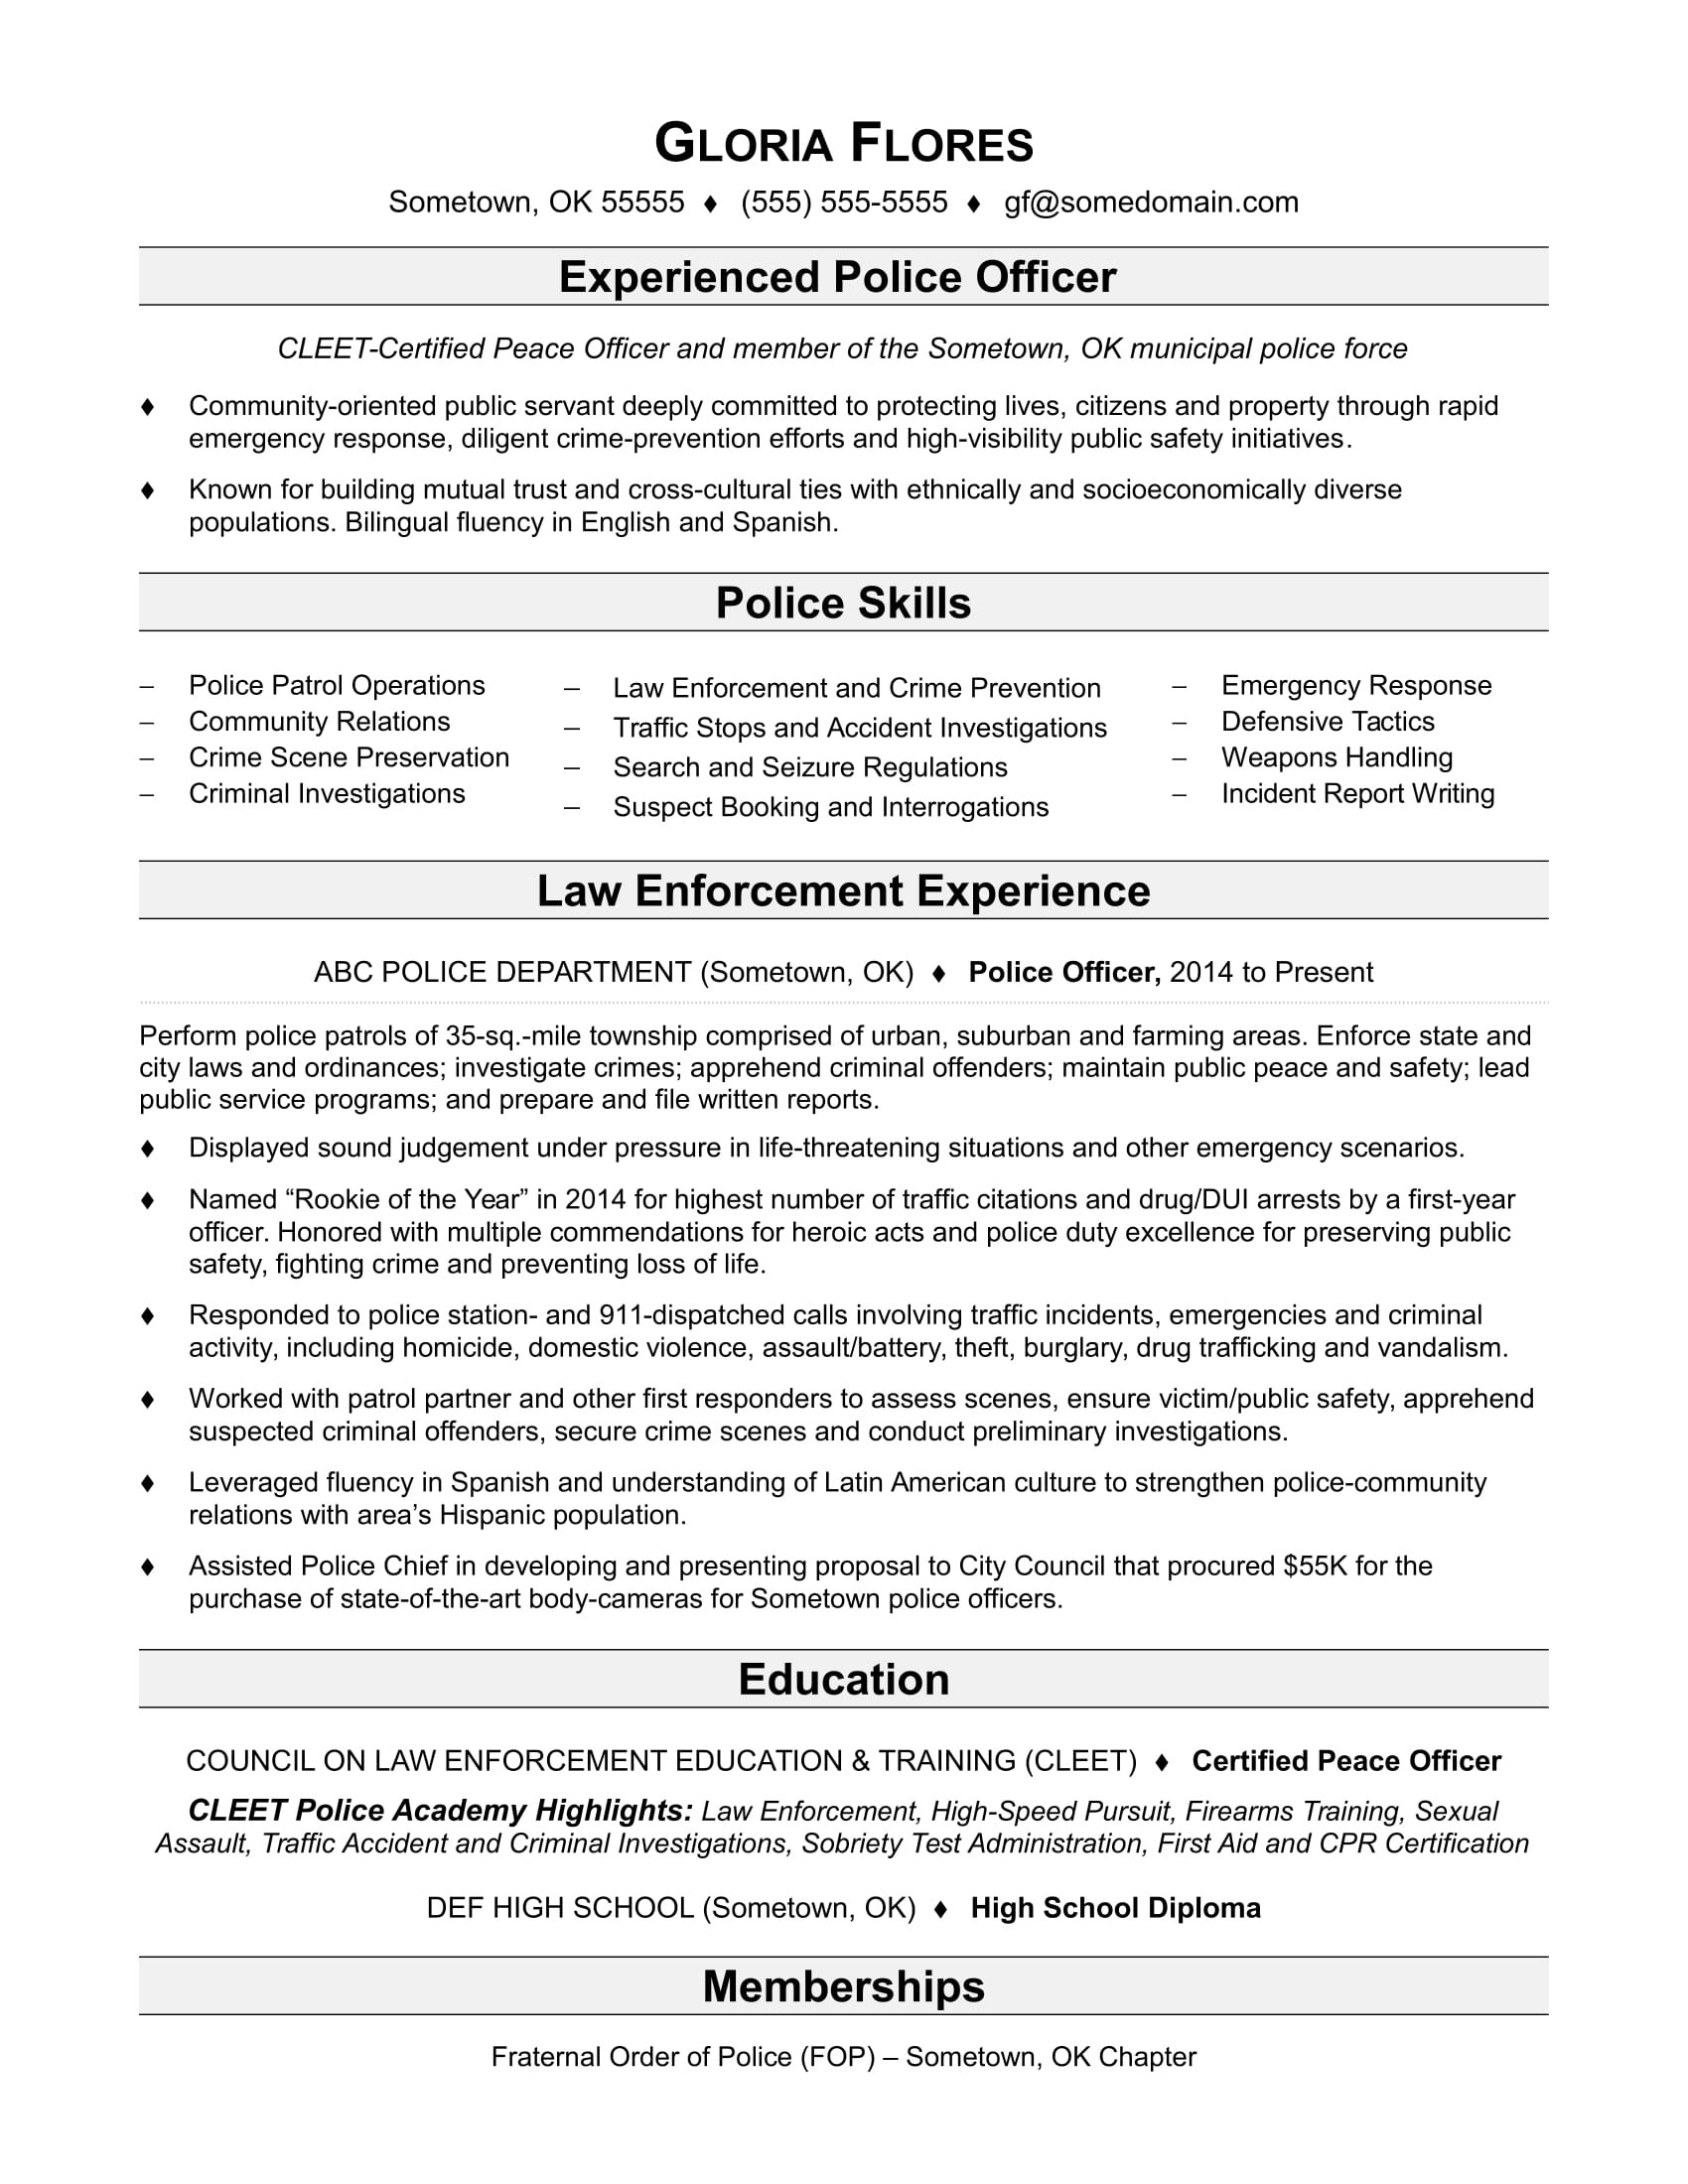 Sample Objectives for Resumes Law Enforcement Police Officer Resume Sample Monster.com